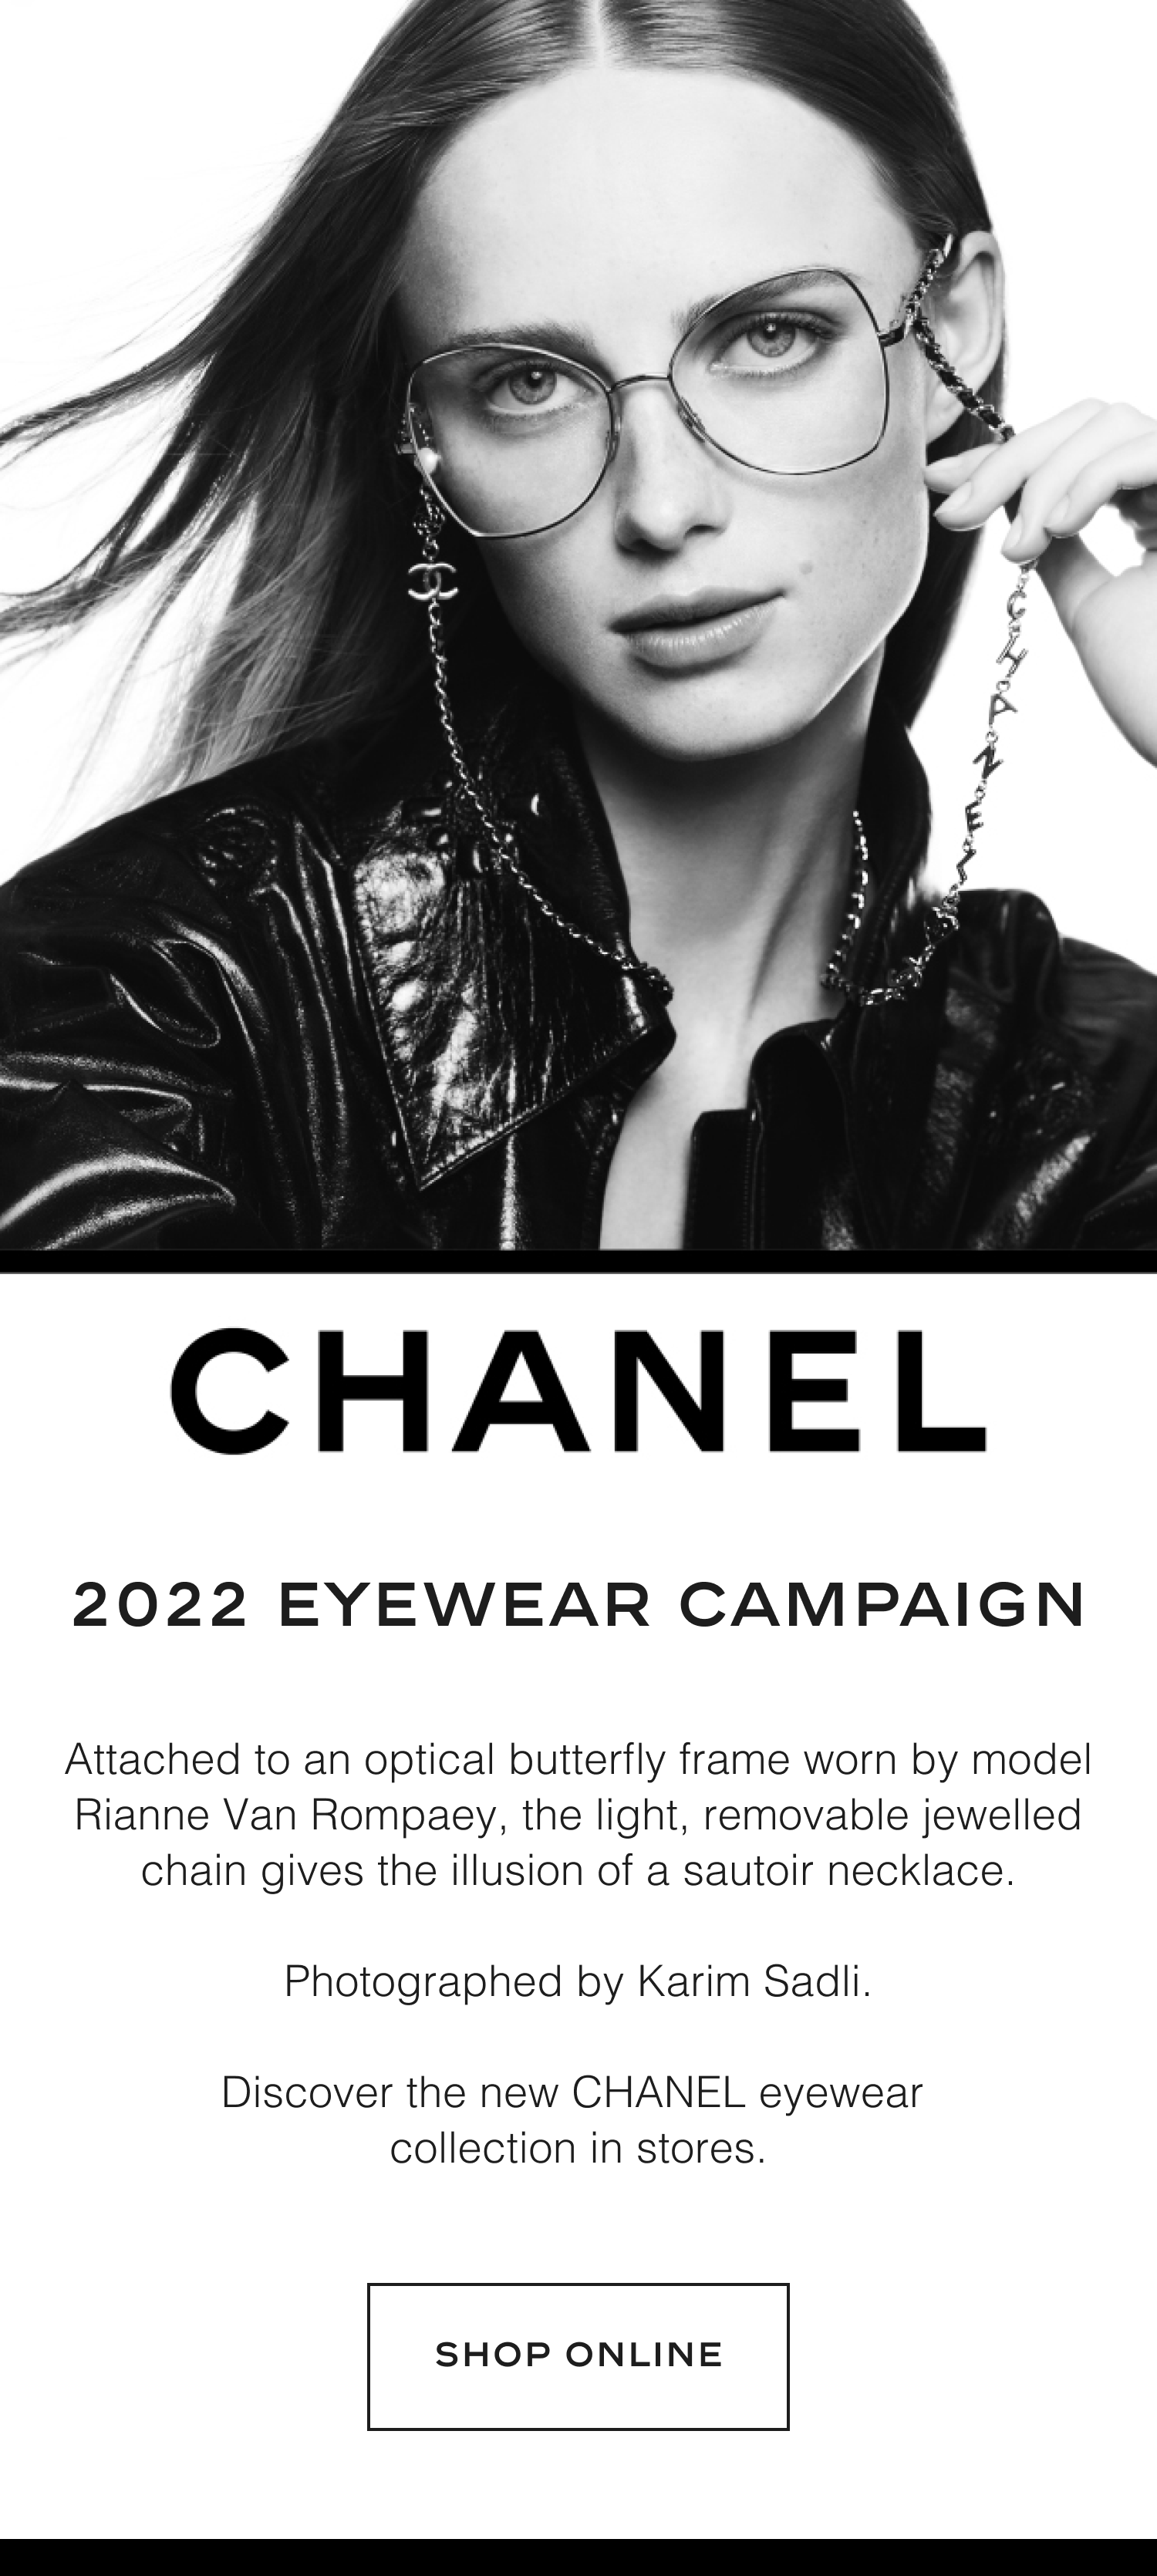 fashioneyewear: Emblematic Details — CHANEL 2022 Eyewear Campaign